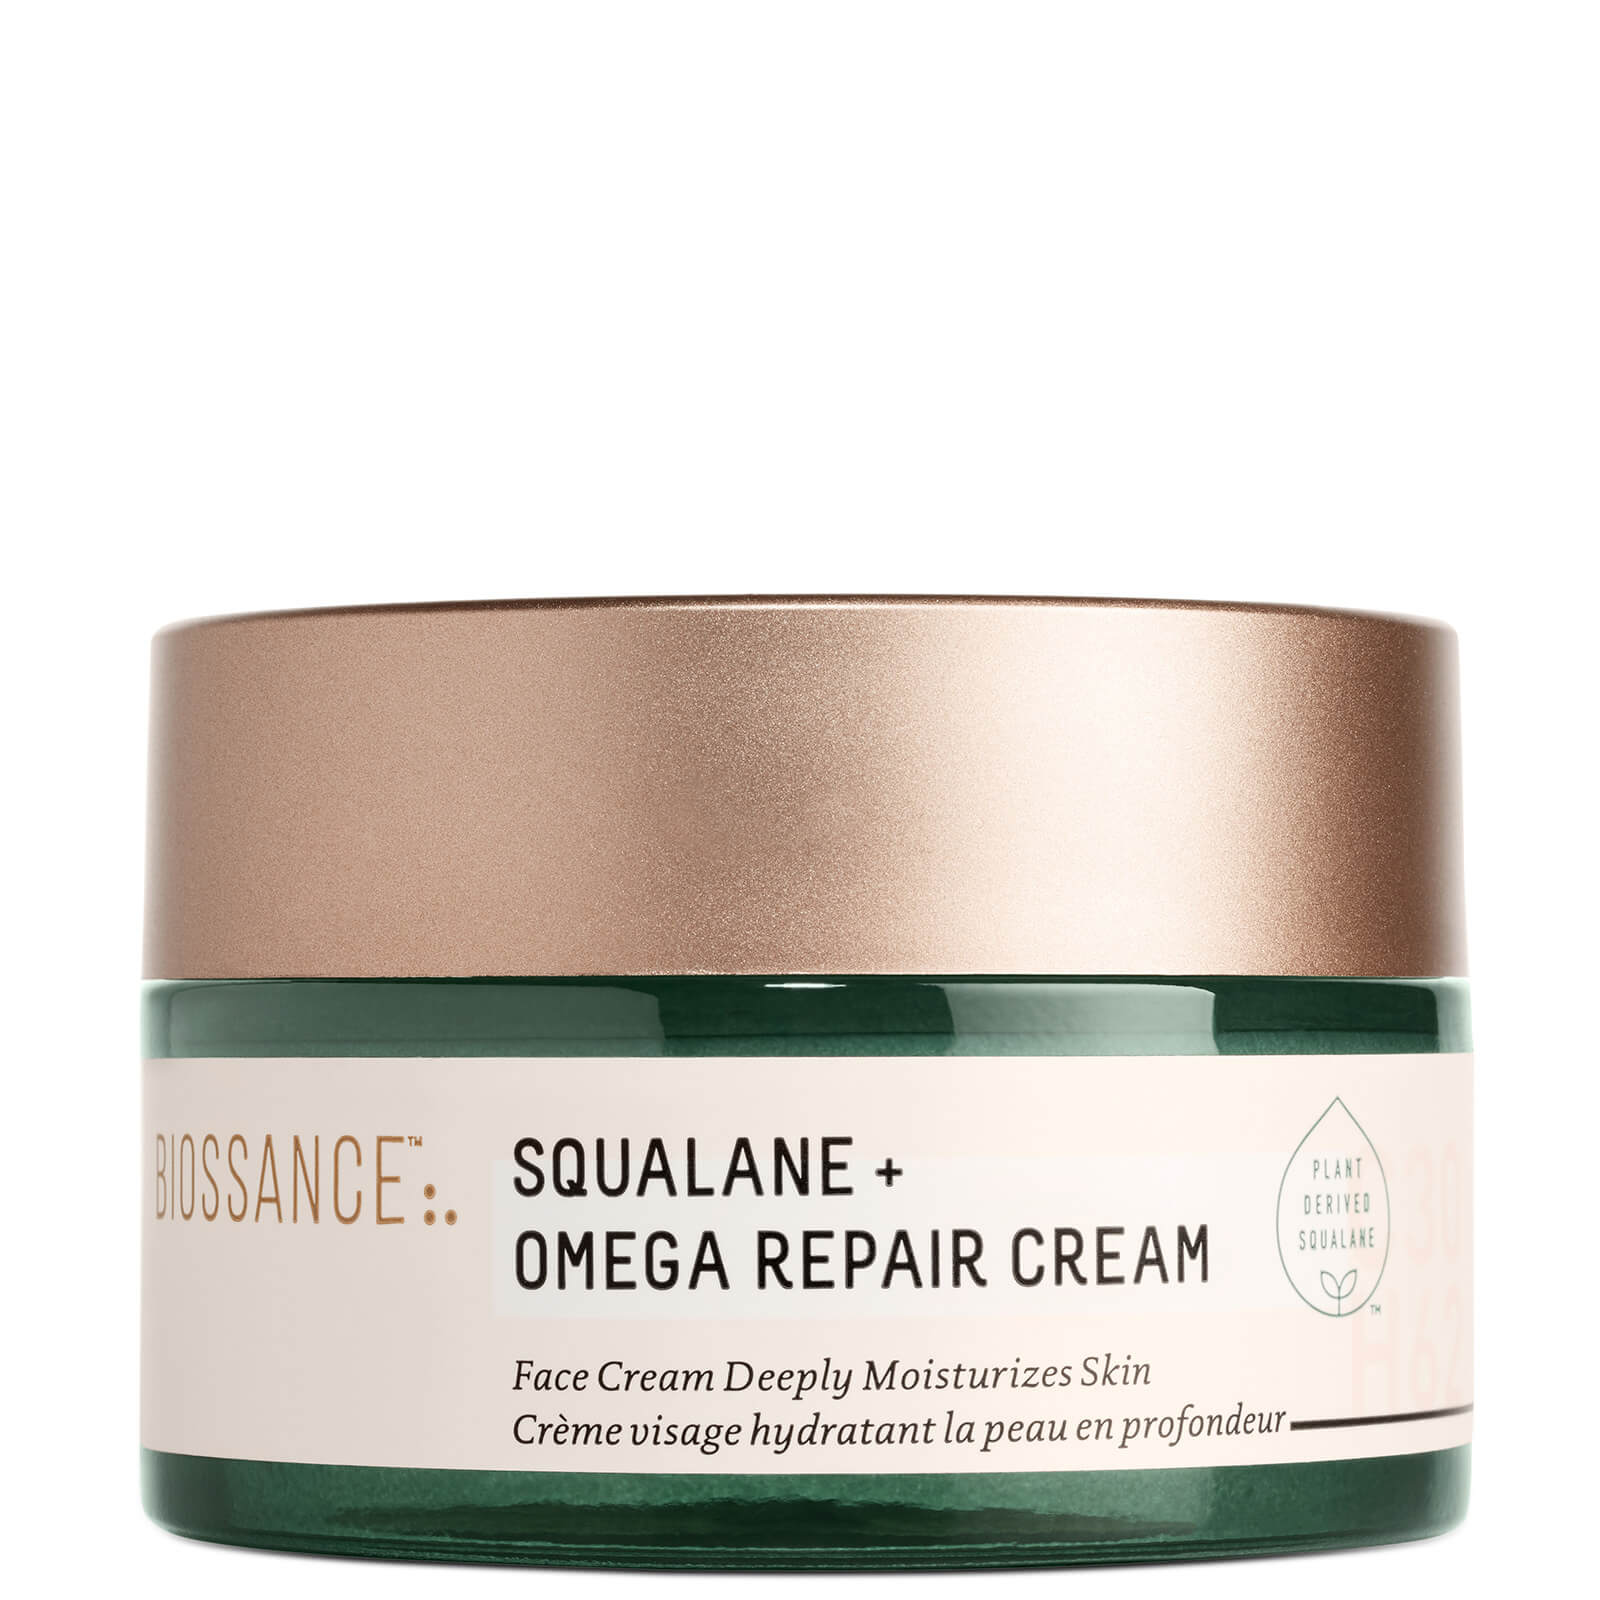 Image of Biossance Omega Repair Cream 50ml